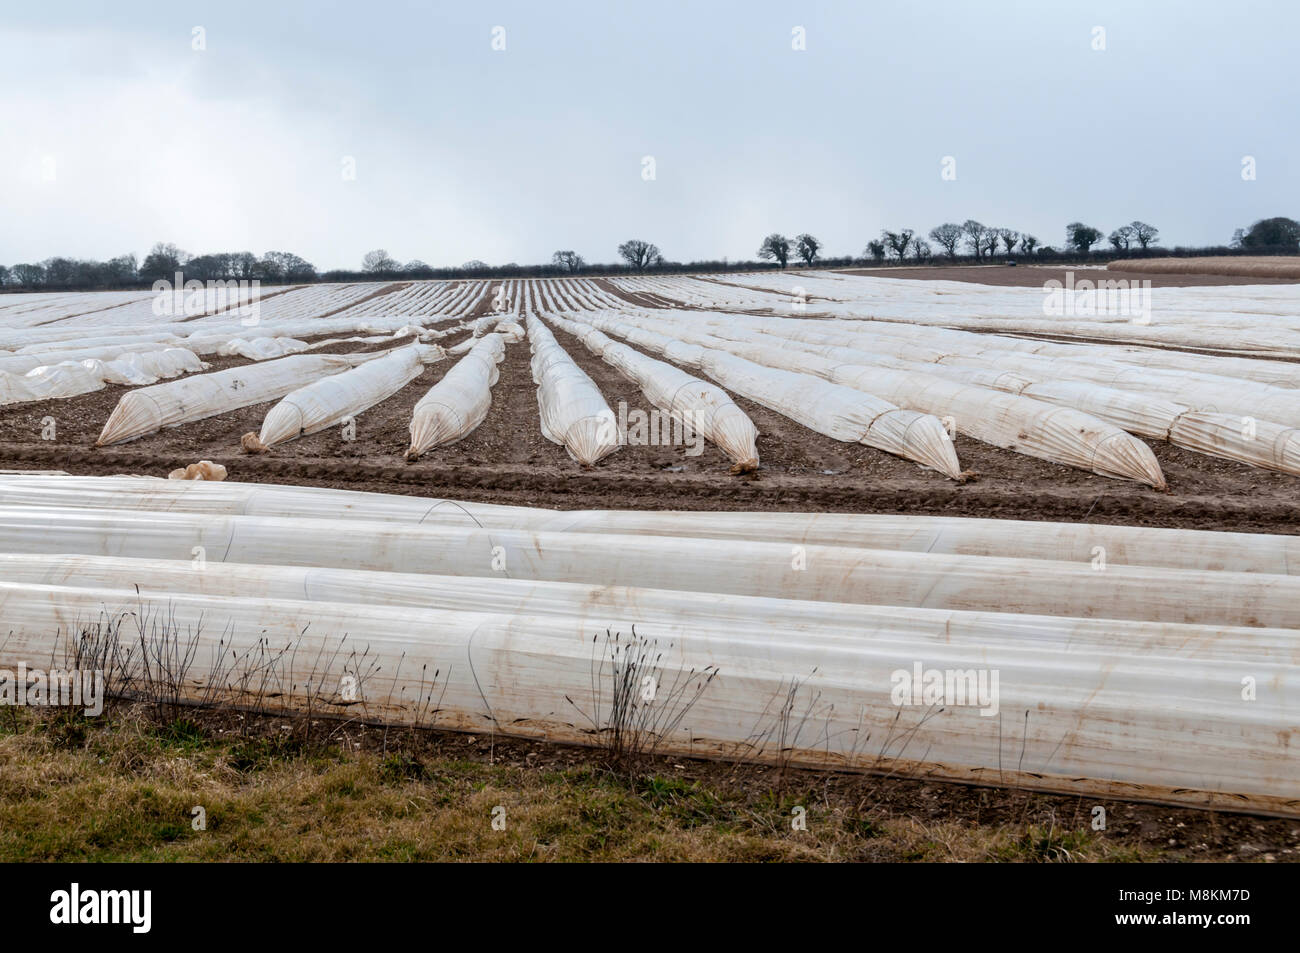 La cobertura plástica en un campo en Norfolk, para calentar el suelo y proteger a los jóvenes de los cultivos. Foto de stock